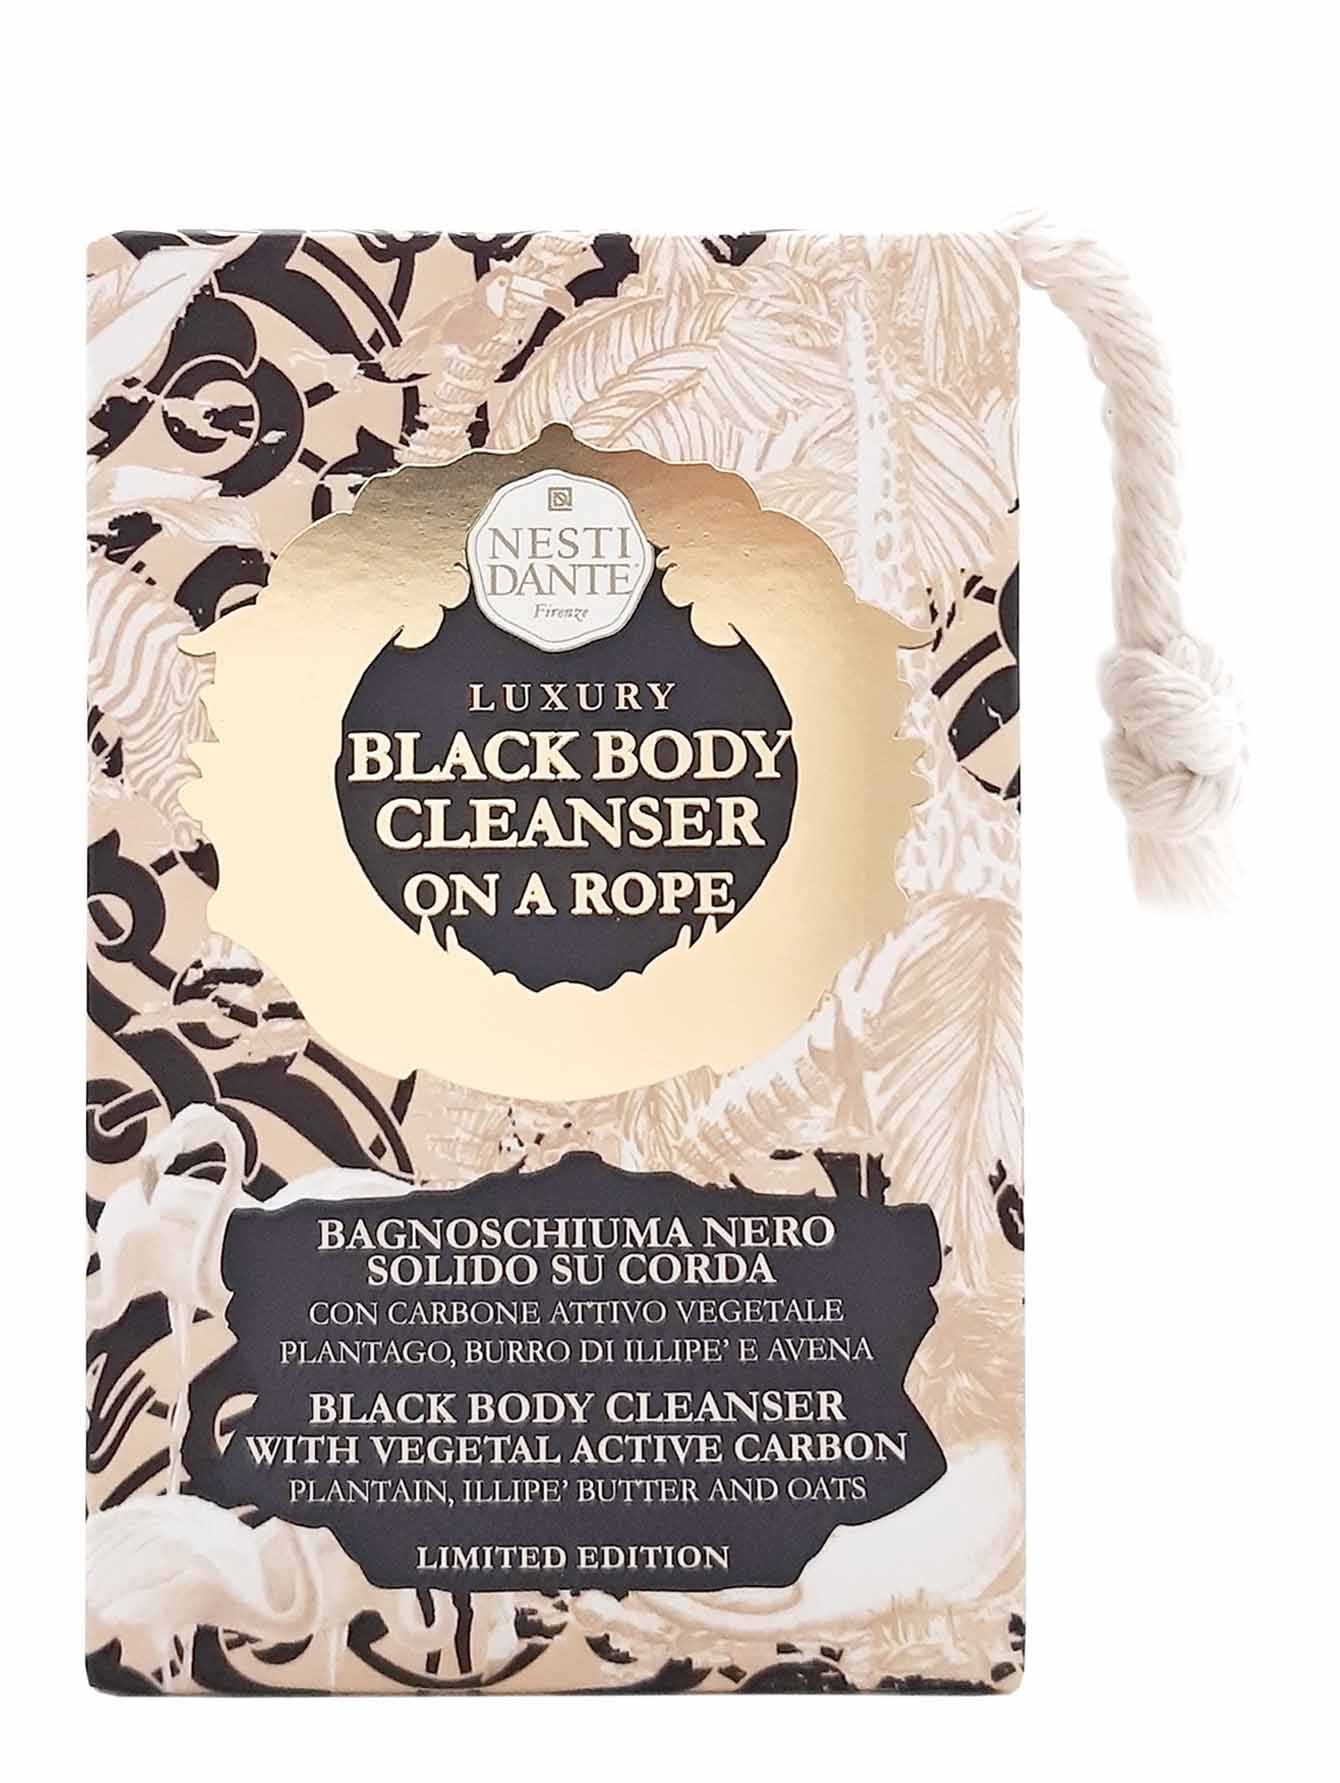 Мыло Luxury Black Body Cleanser, 150 г - Обтравка1